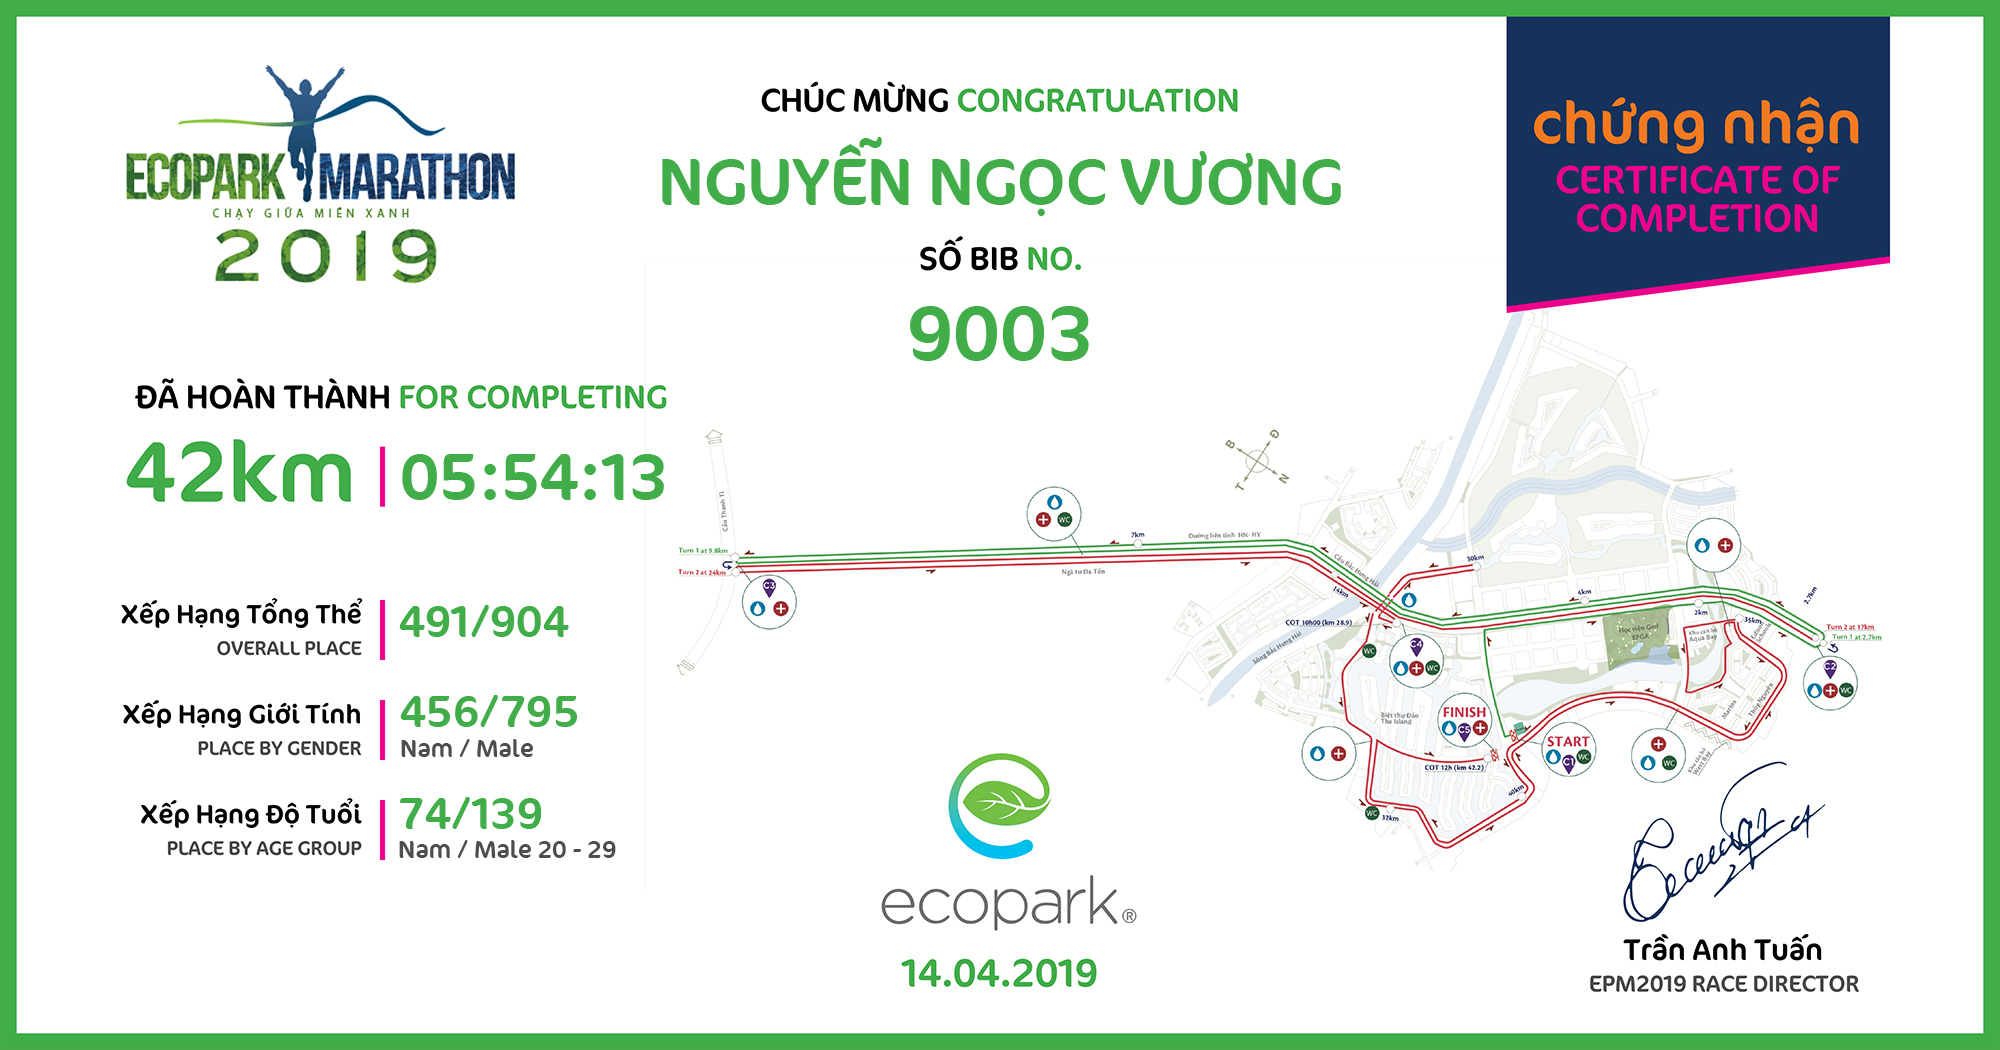 9003 - Nguyễn Ngọc Vương